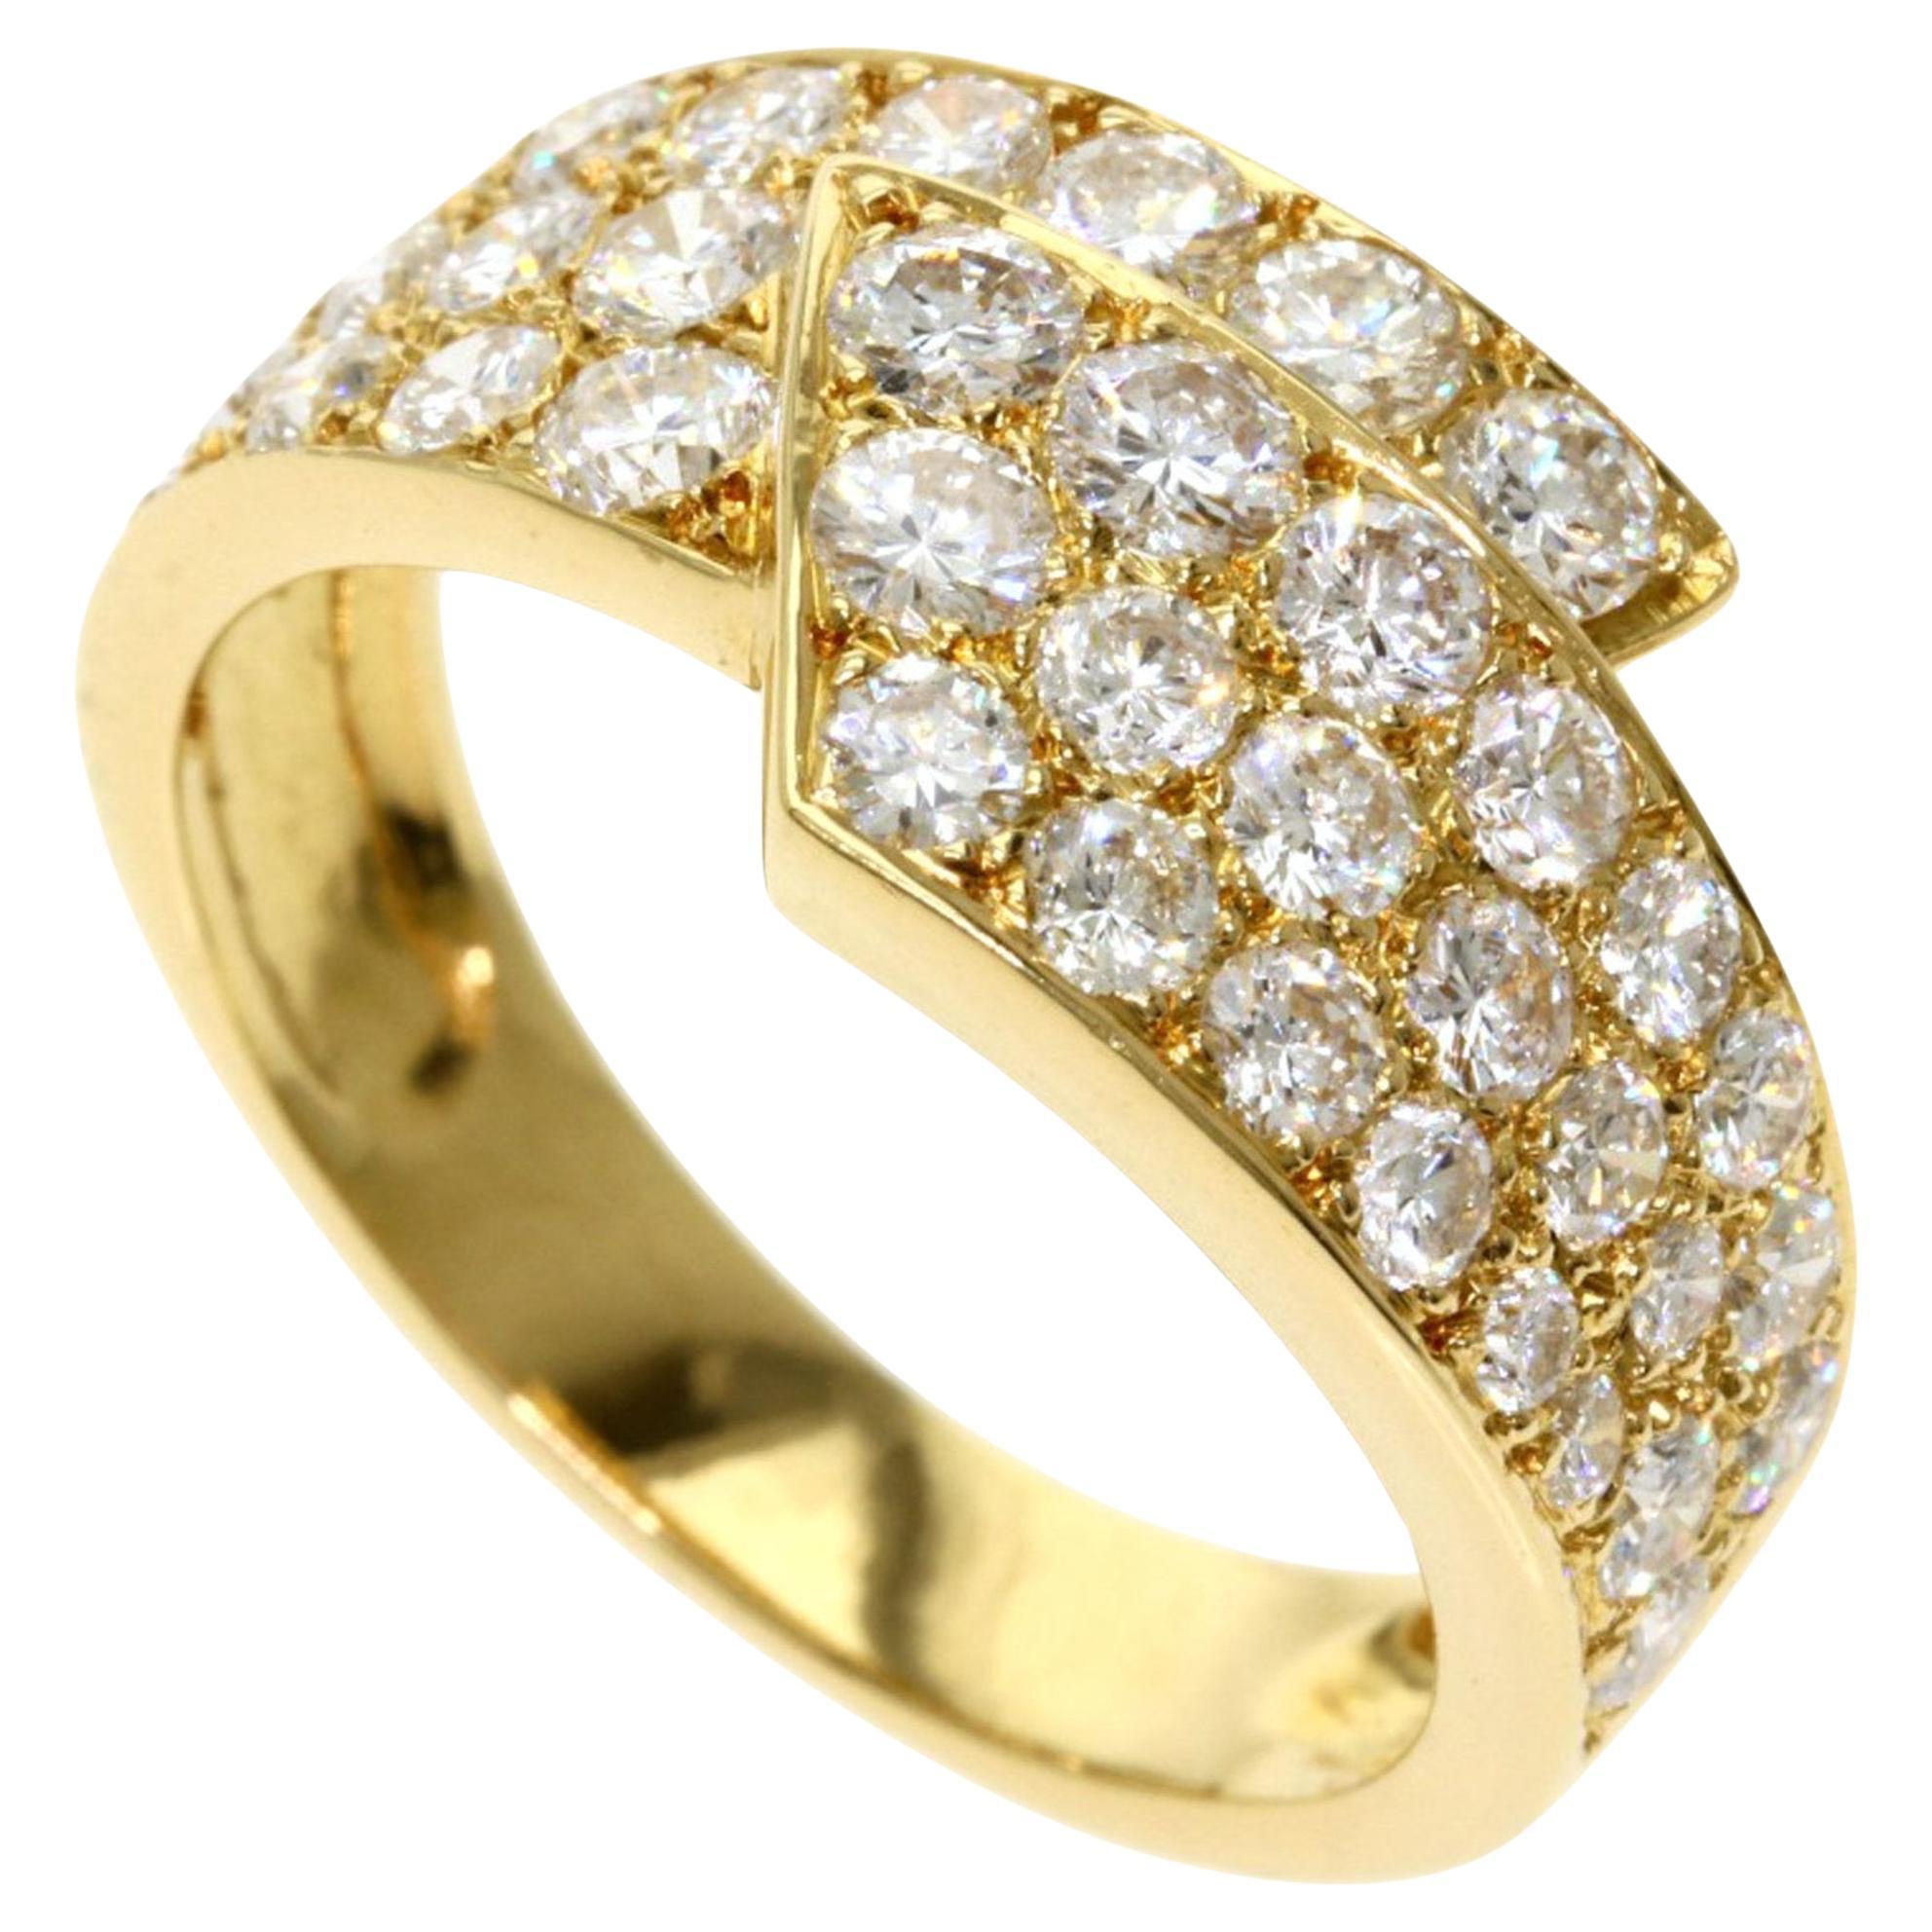 Van Cleef & Arpels Diamond Rings in 18K Yellow Gold